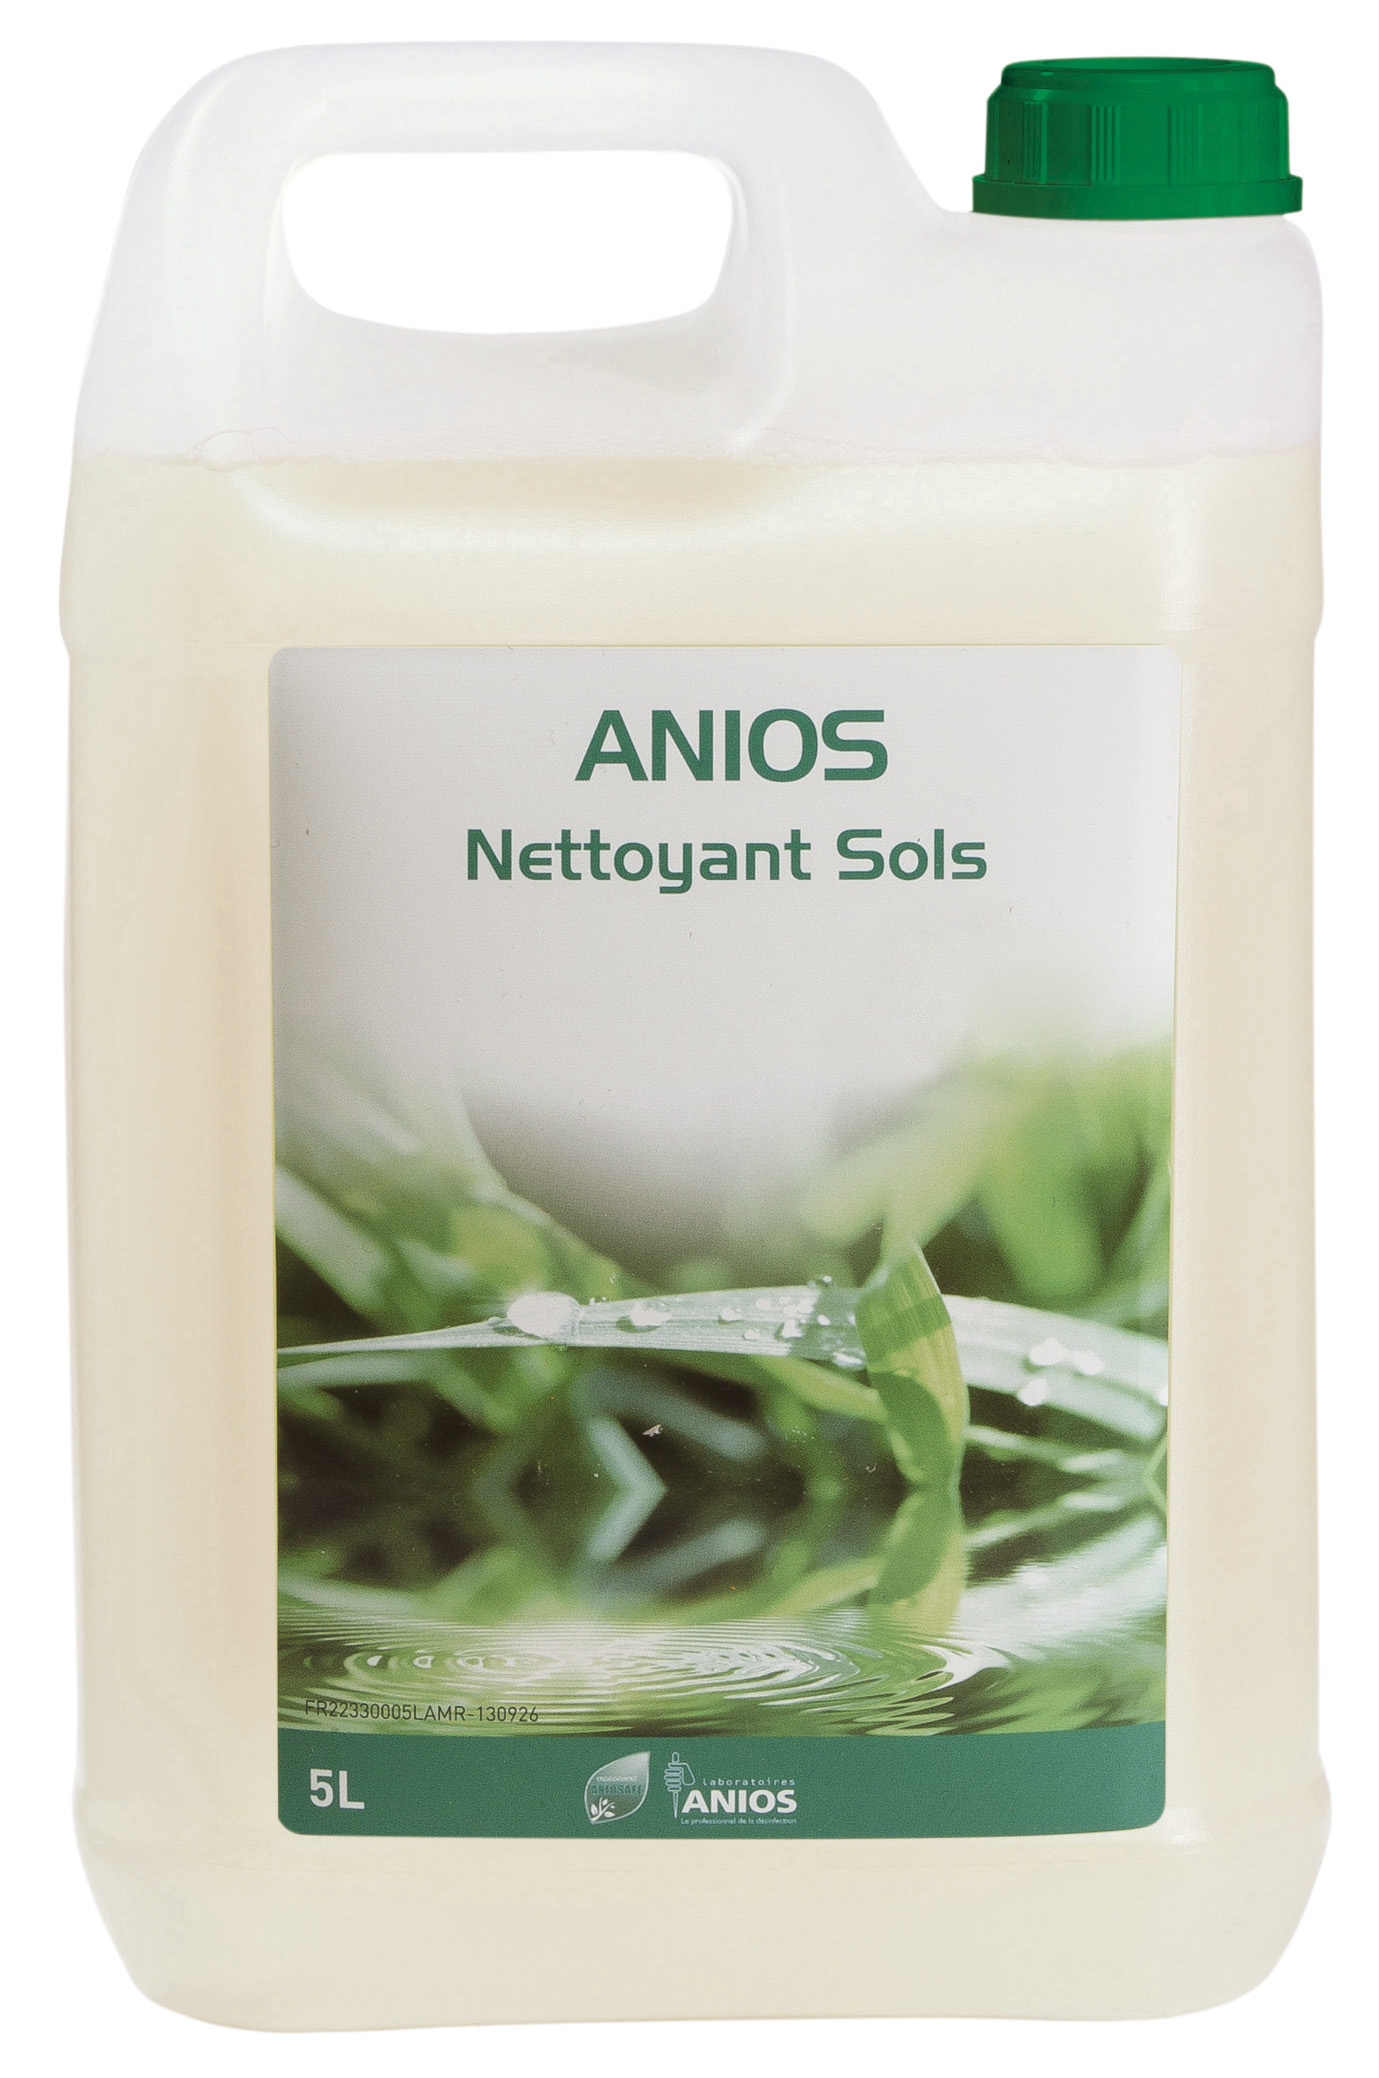 ANIOS Nettoyant Sol 5L Ecocert - Bioconnect